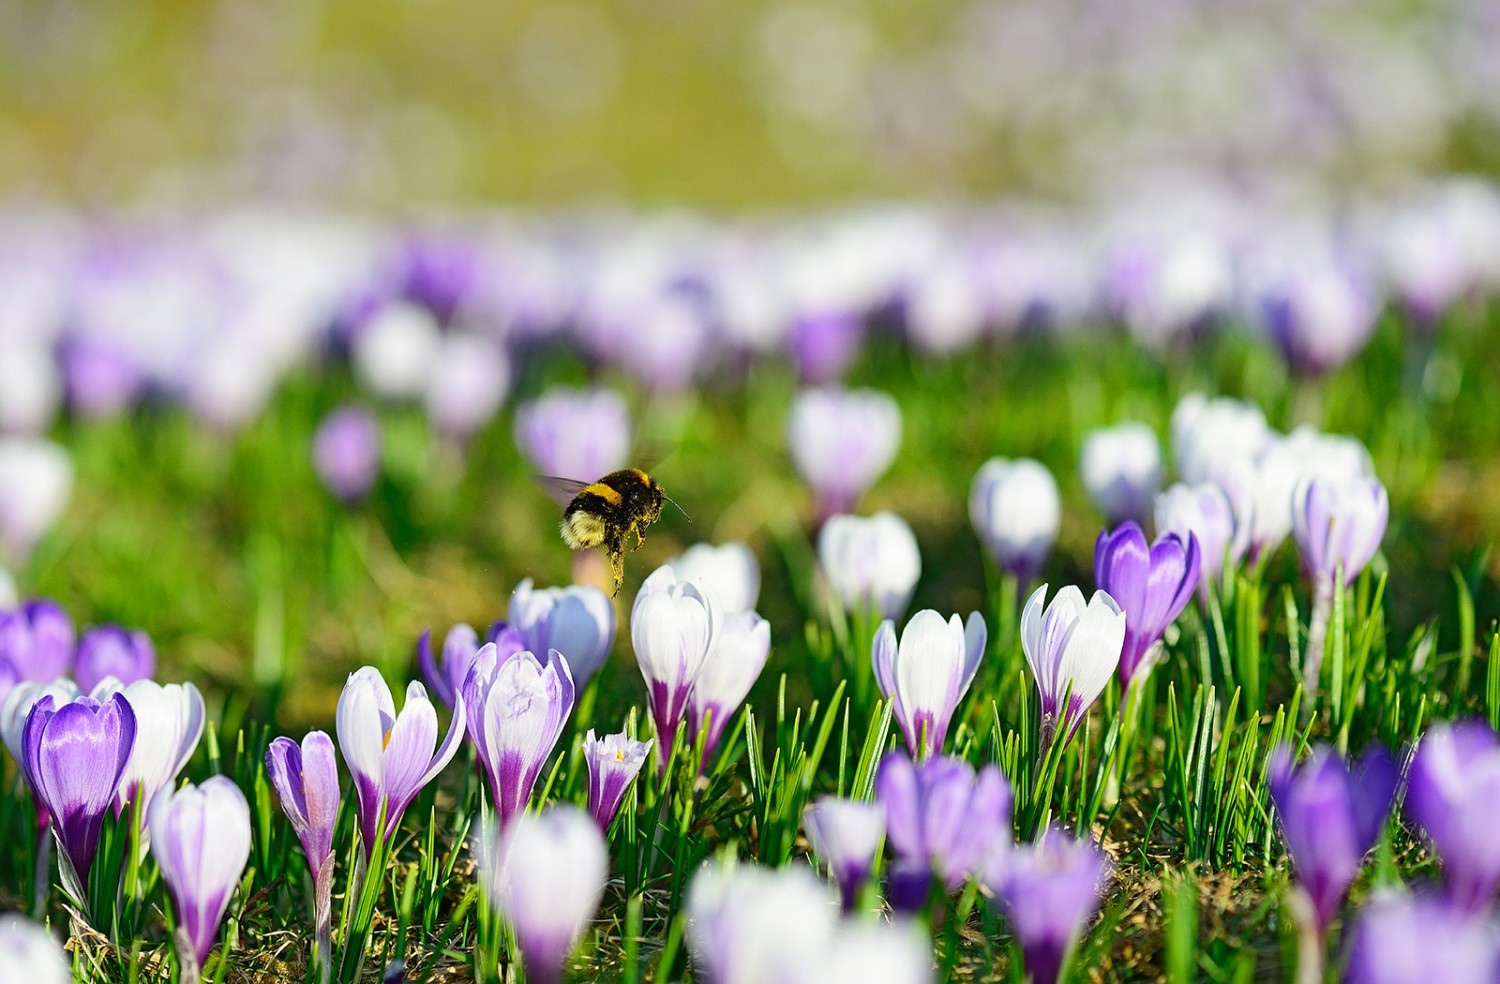 Wildbienen, z.B. Hummeln, fliegen und bestäuben die Krokusse auch bei schlechtem Wetter und tiefen Temperaturen.